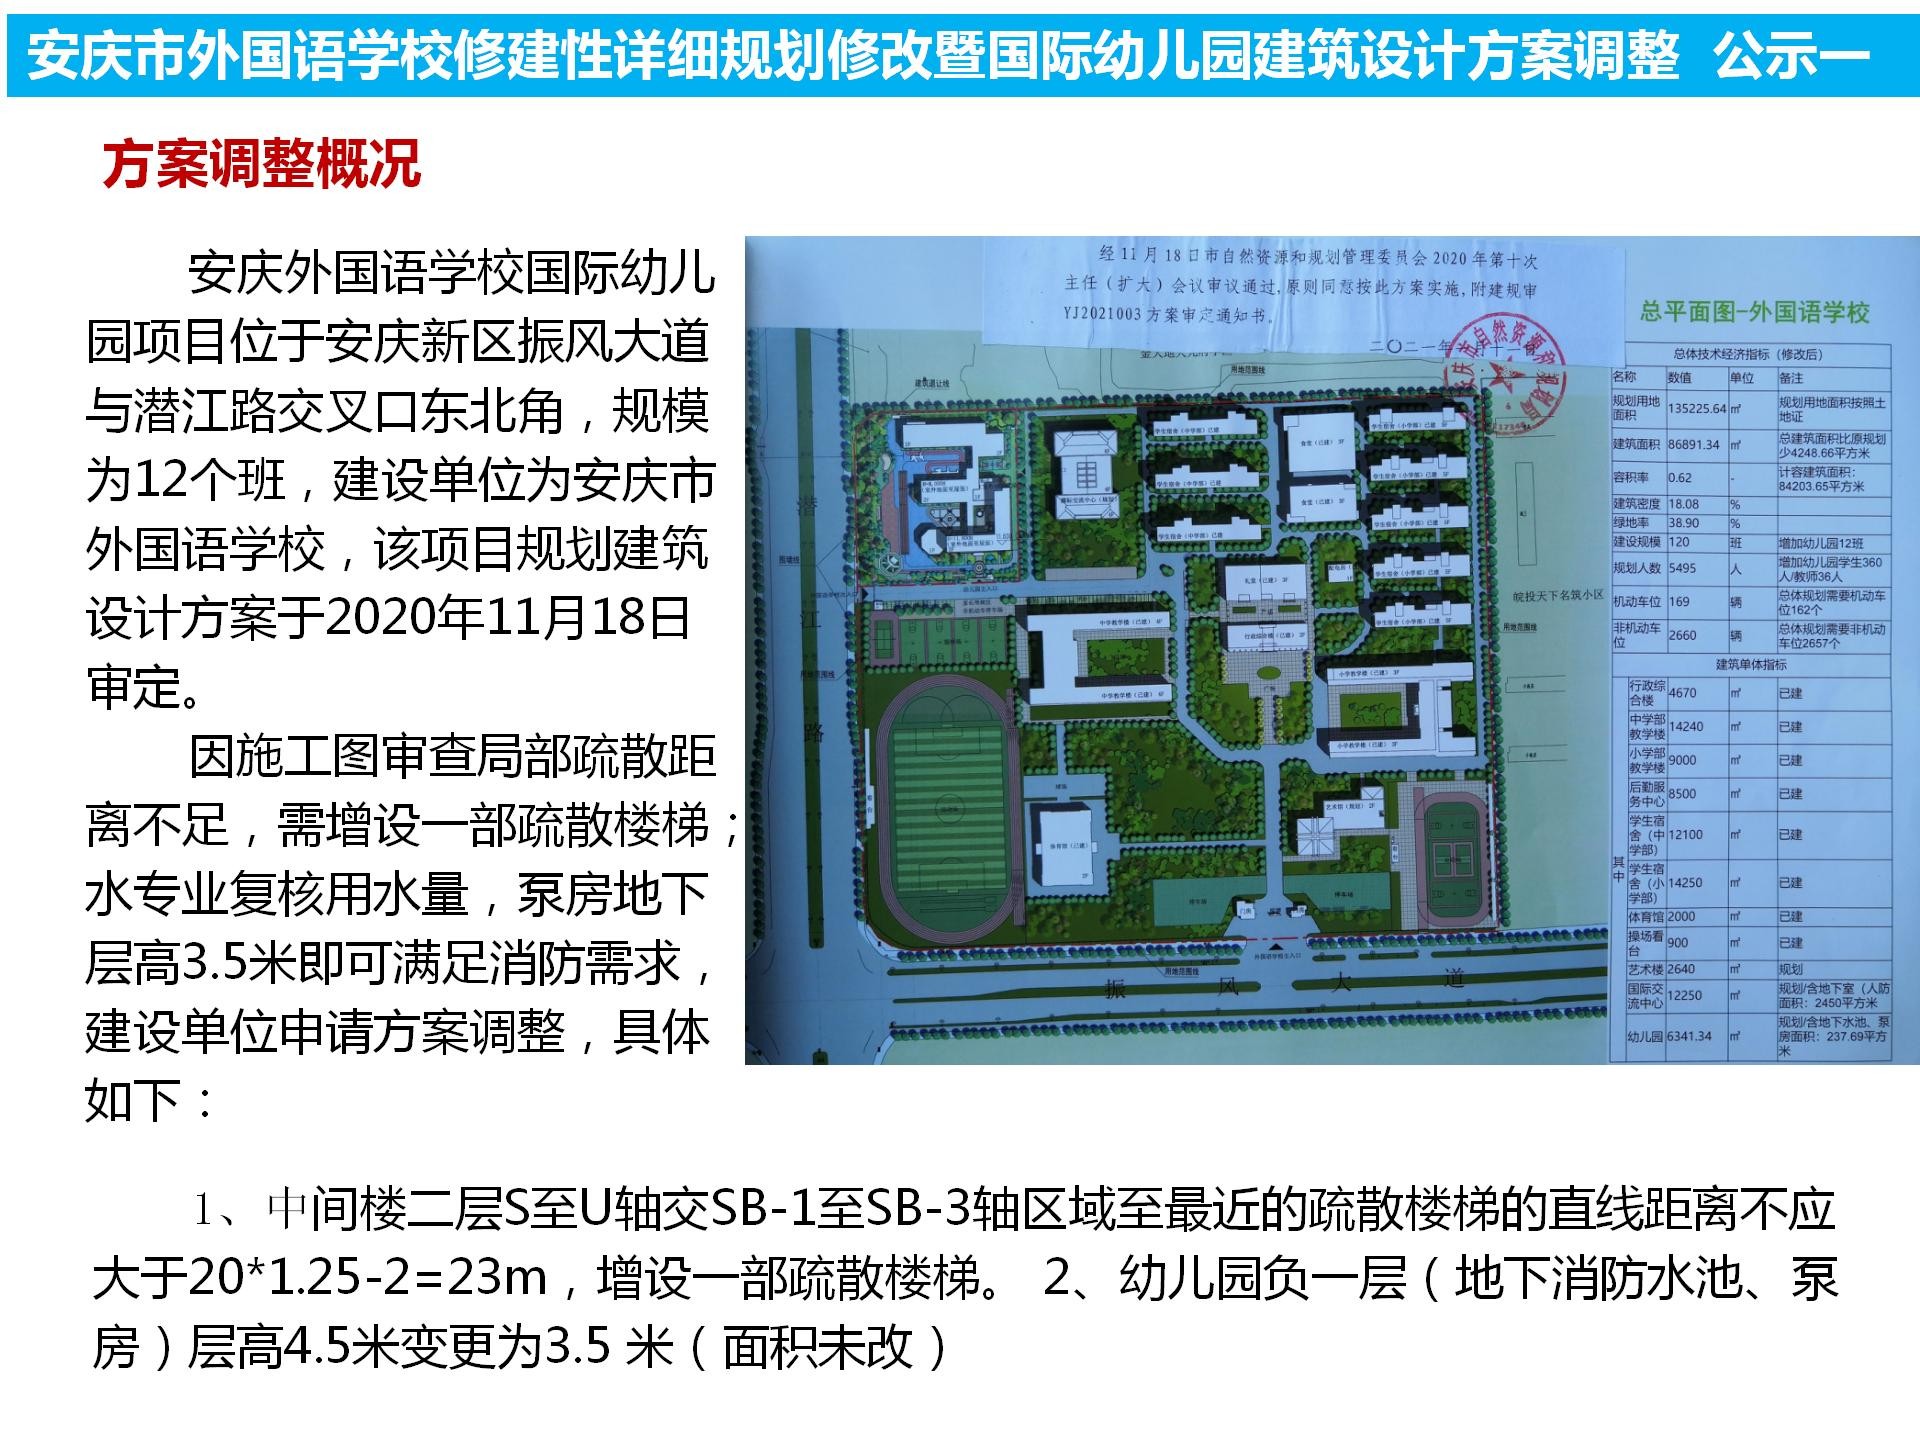 安庆市外国语学校修建性详细规划修改 暨国际幼儿园建筑设计方案调整公示公告